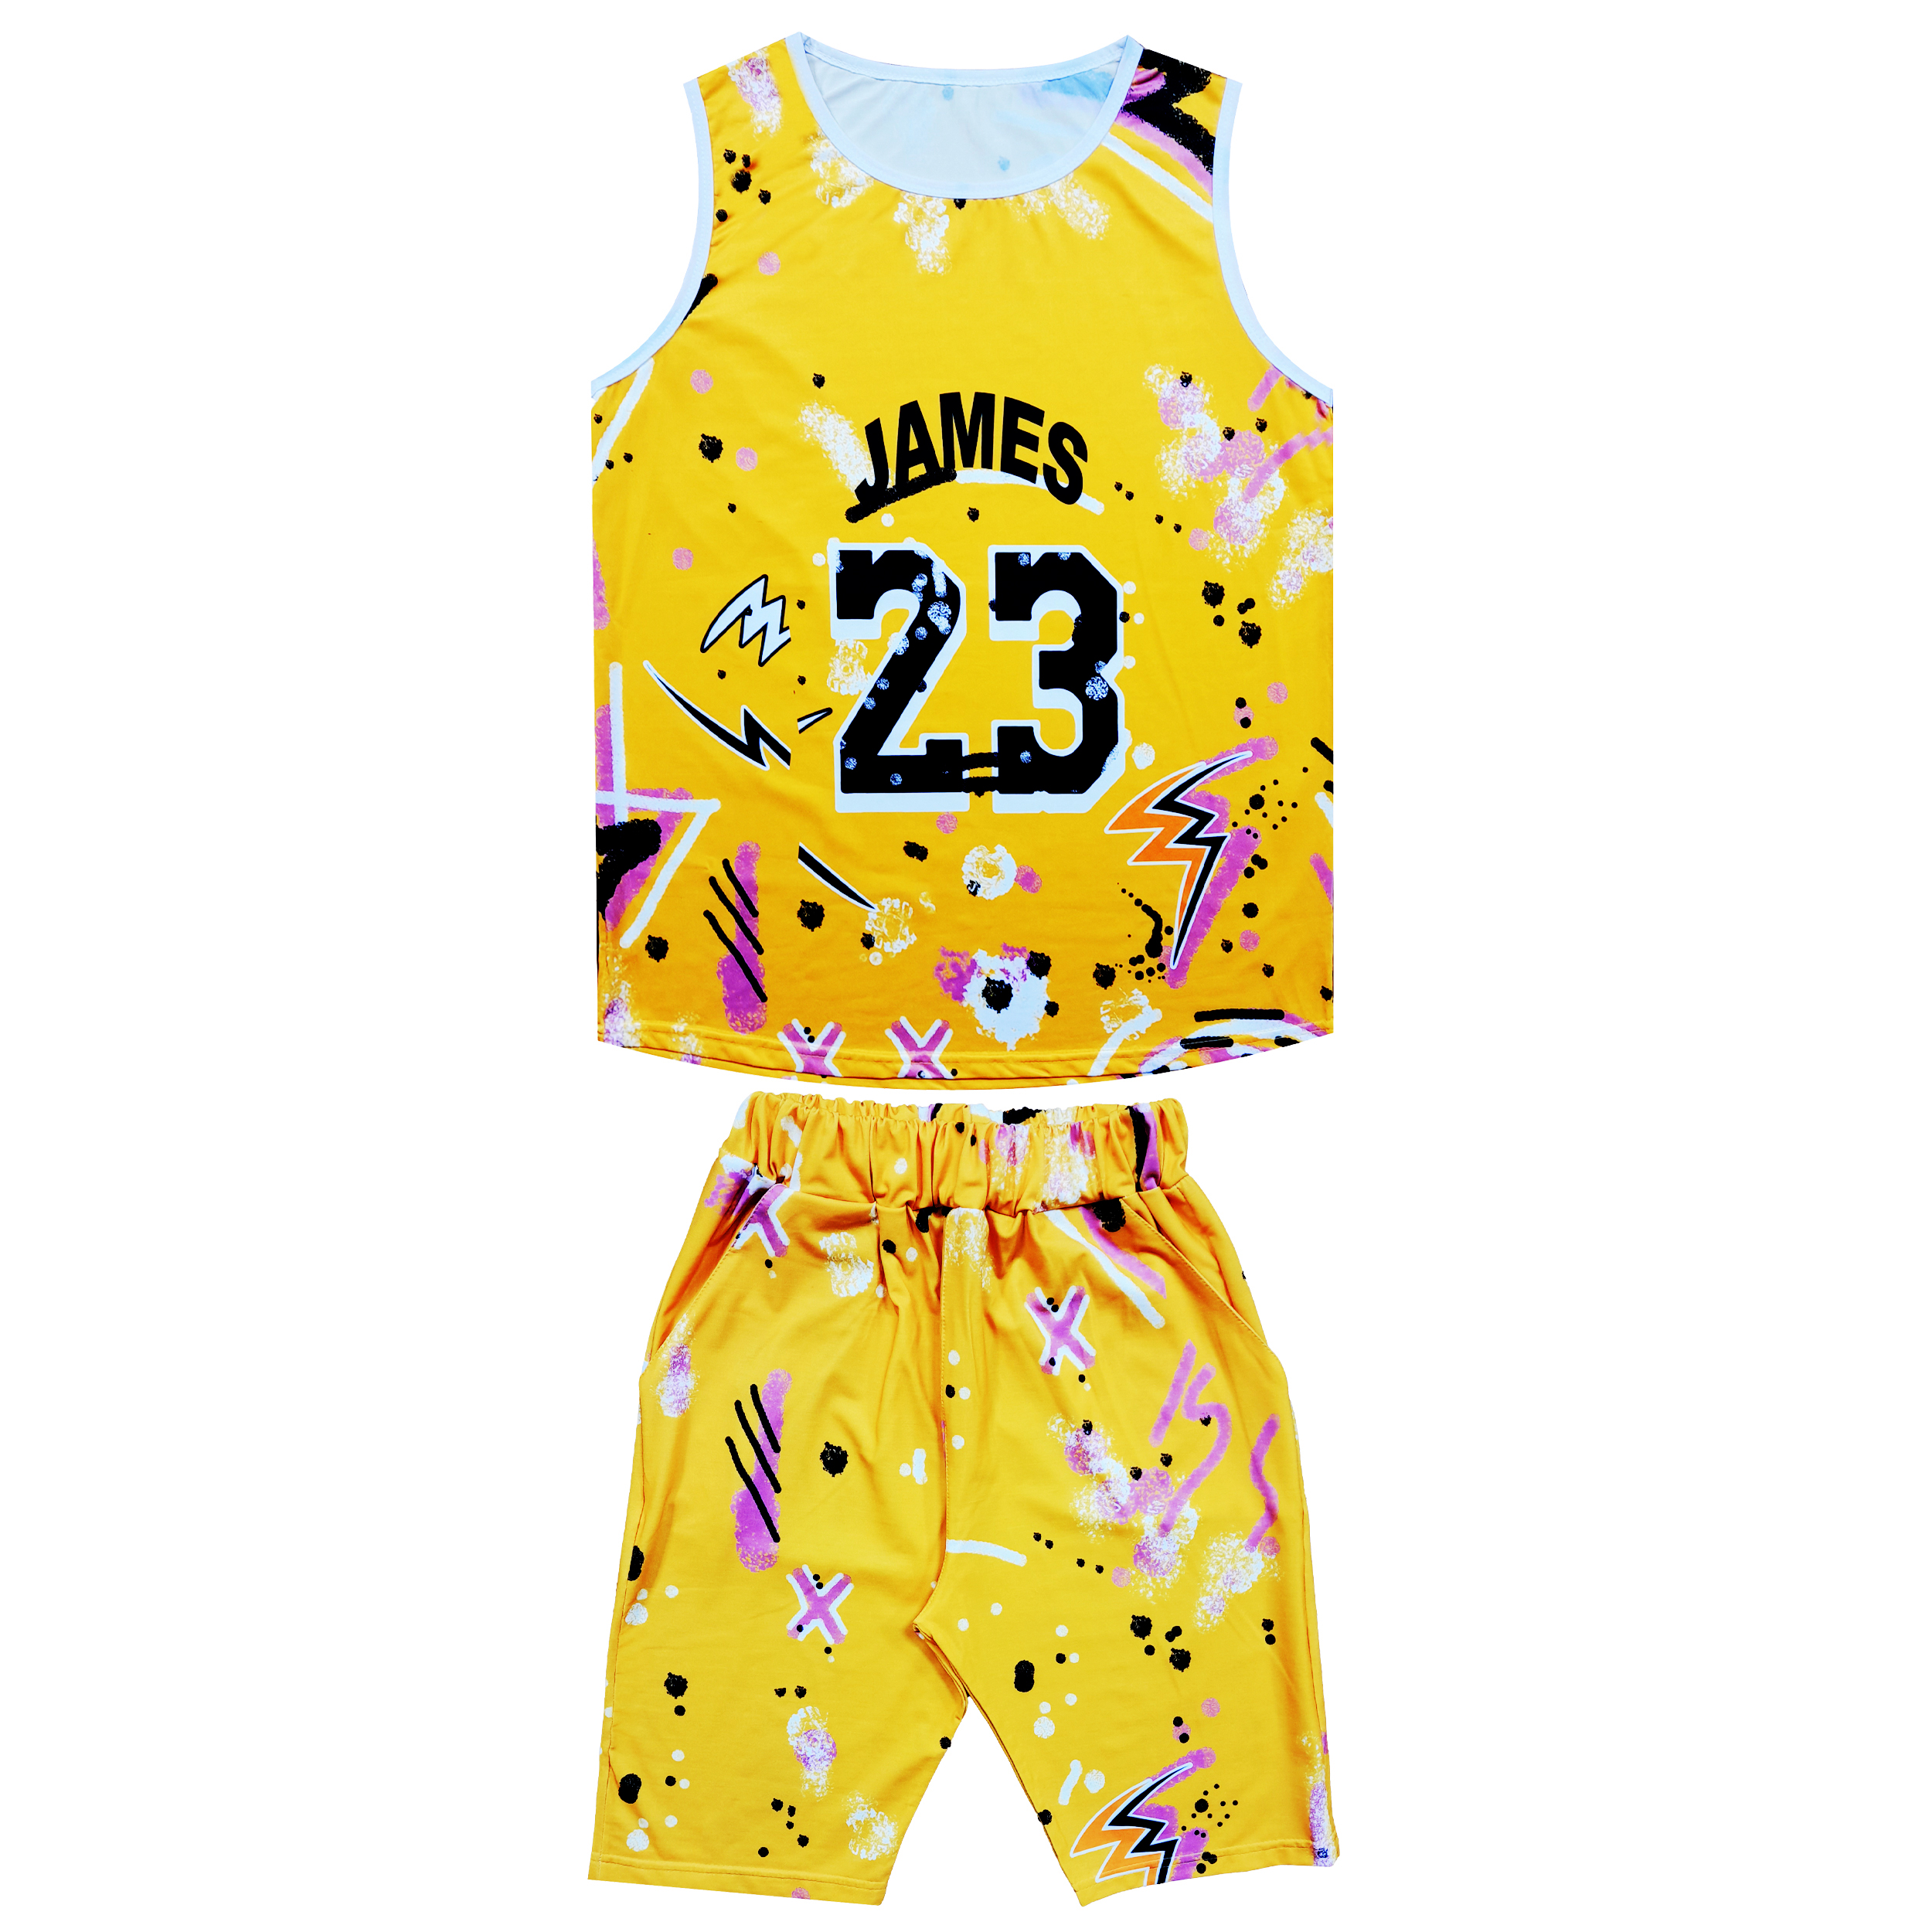 ست تاپ و شلوارک ورزشی مردانه مدل JAMES 23 کد LJ23 رنگ زرد